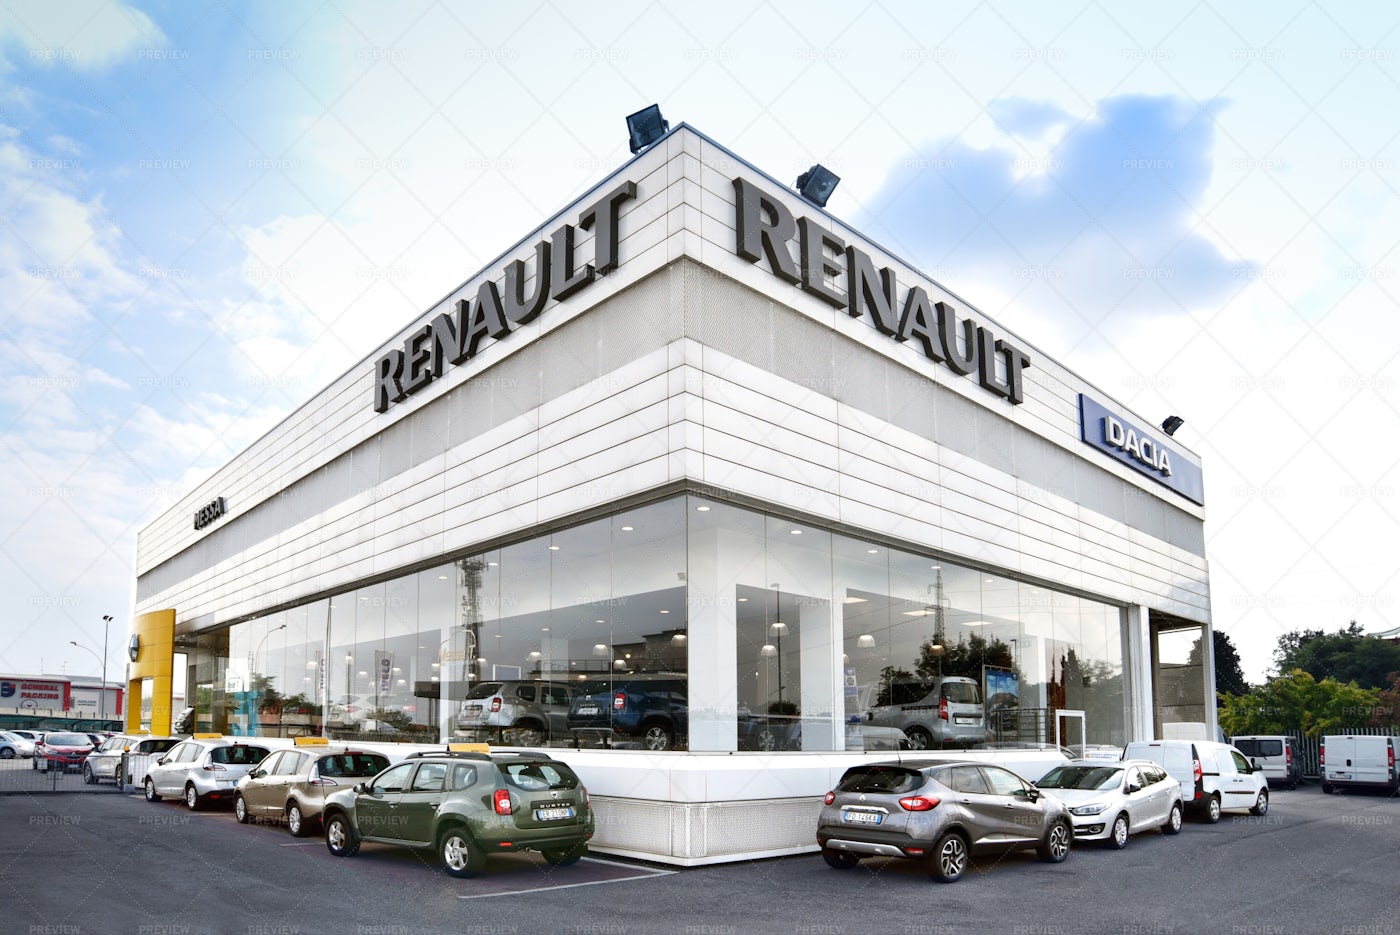 Renault And Dacia Car Dealer: Stock Photos